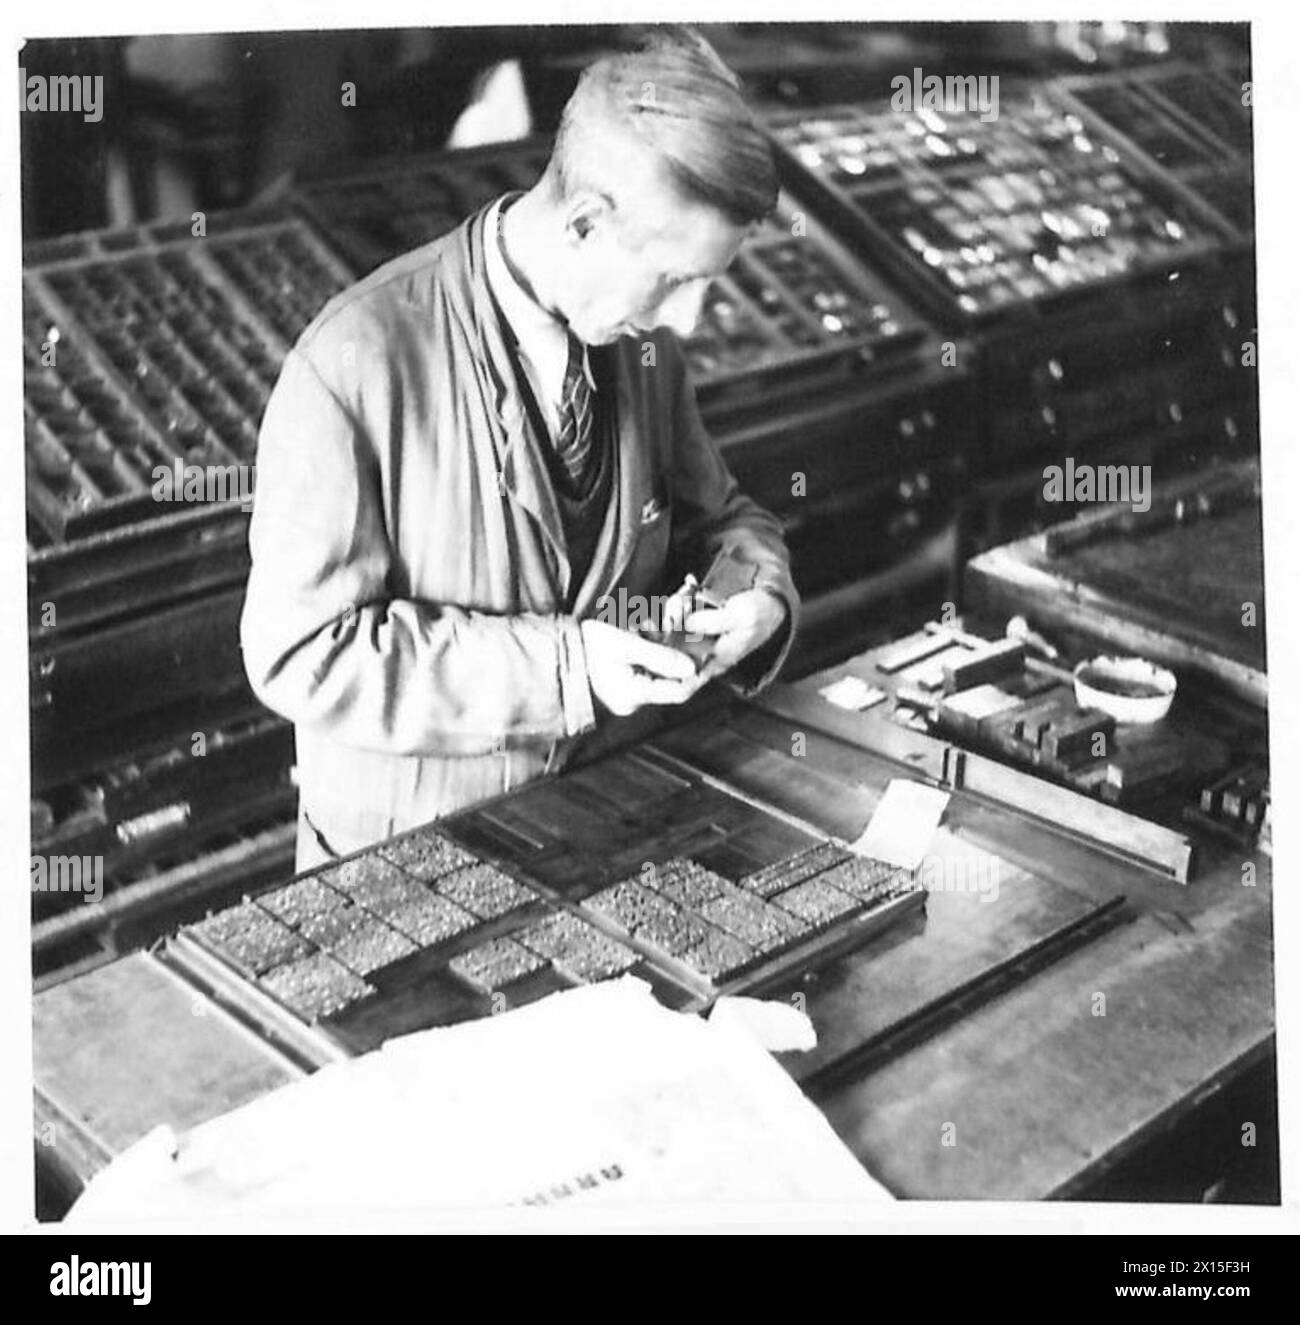 LA RIVISTA SOLDIER DI AMBURGO - typesetters poi prende il tipo impostato dagli operatori Intertype e lo costruisce a pagina, secondo il layout fornito loro dall'esercito britannico del Reno Foto Stock